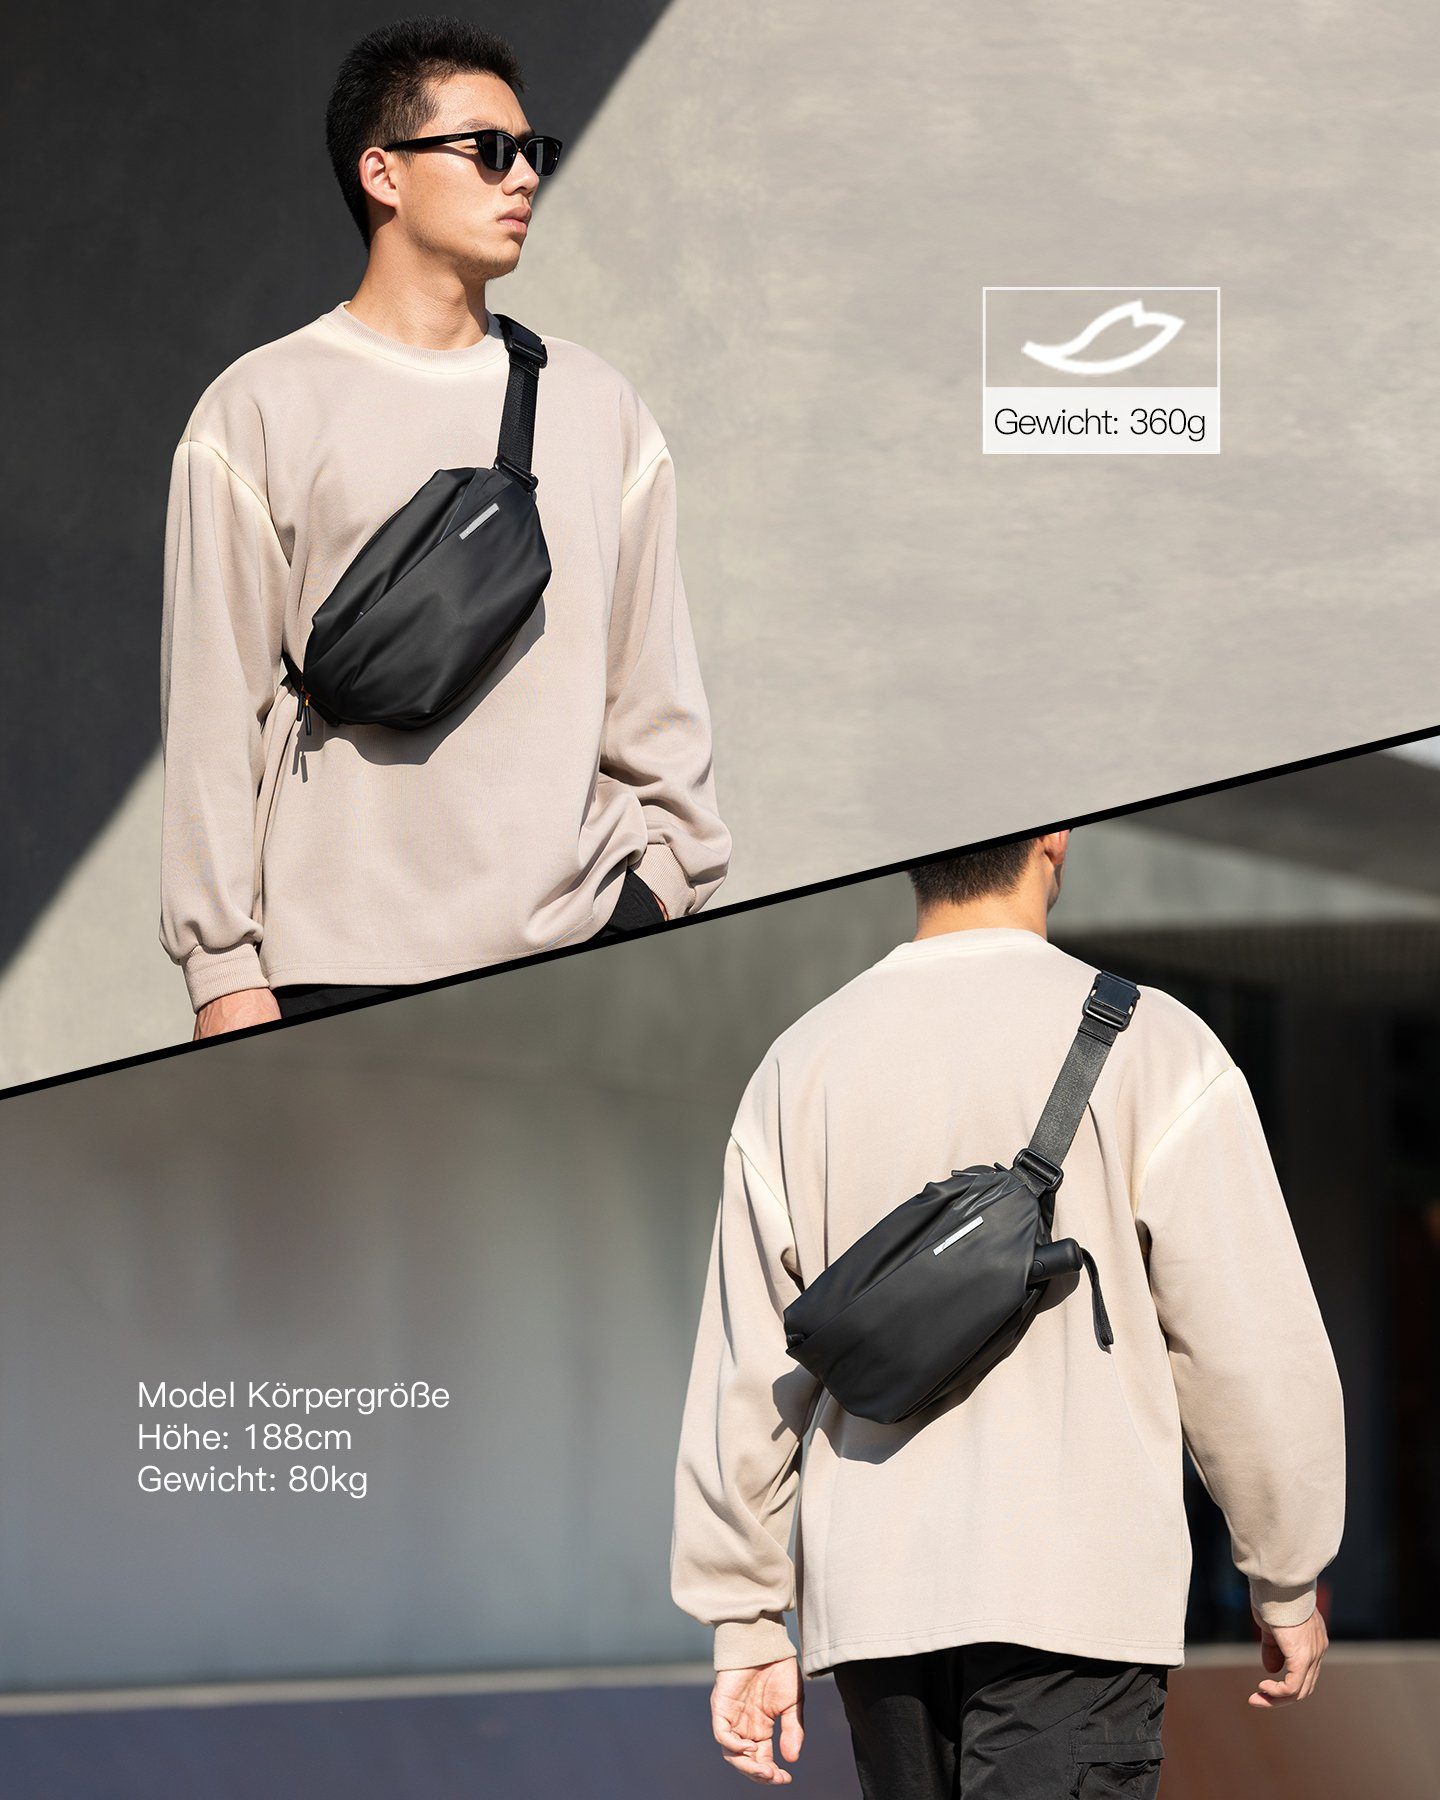 verstellbarem Sling Crossbody stylische abriebfest Bag mit Schultergurt, spritzwassergeschützt Inateck und Bag, Gürteltasche